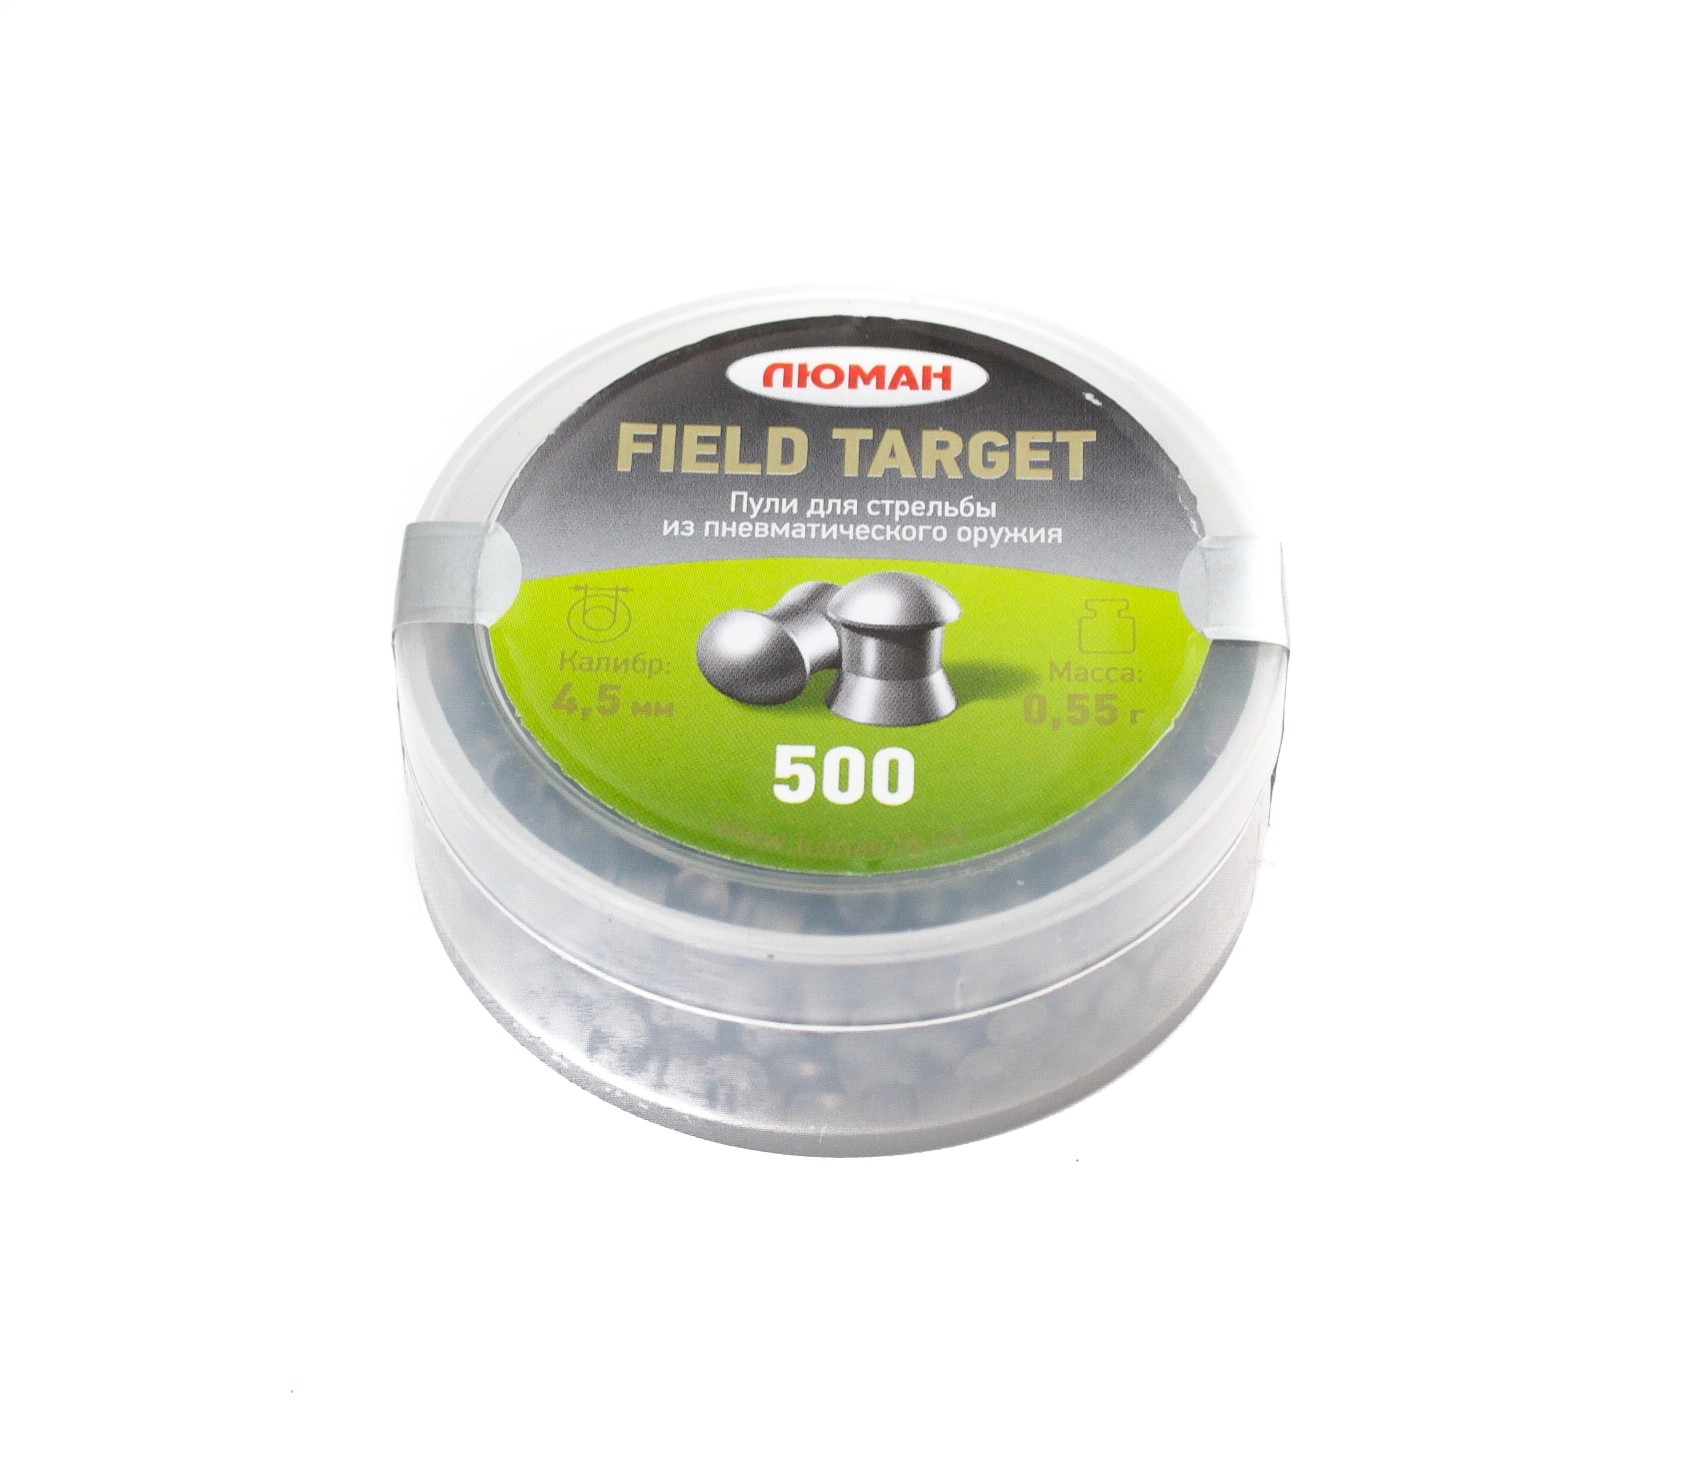 Пульки Люман Field Target 0,55 гр 500 шт - фото 1